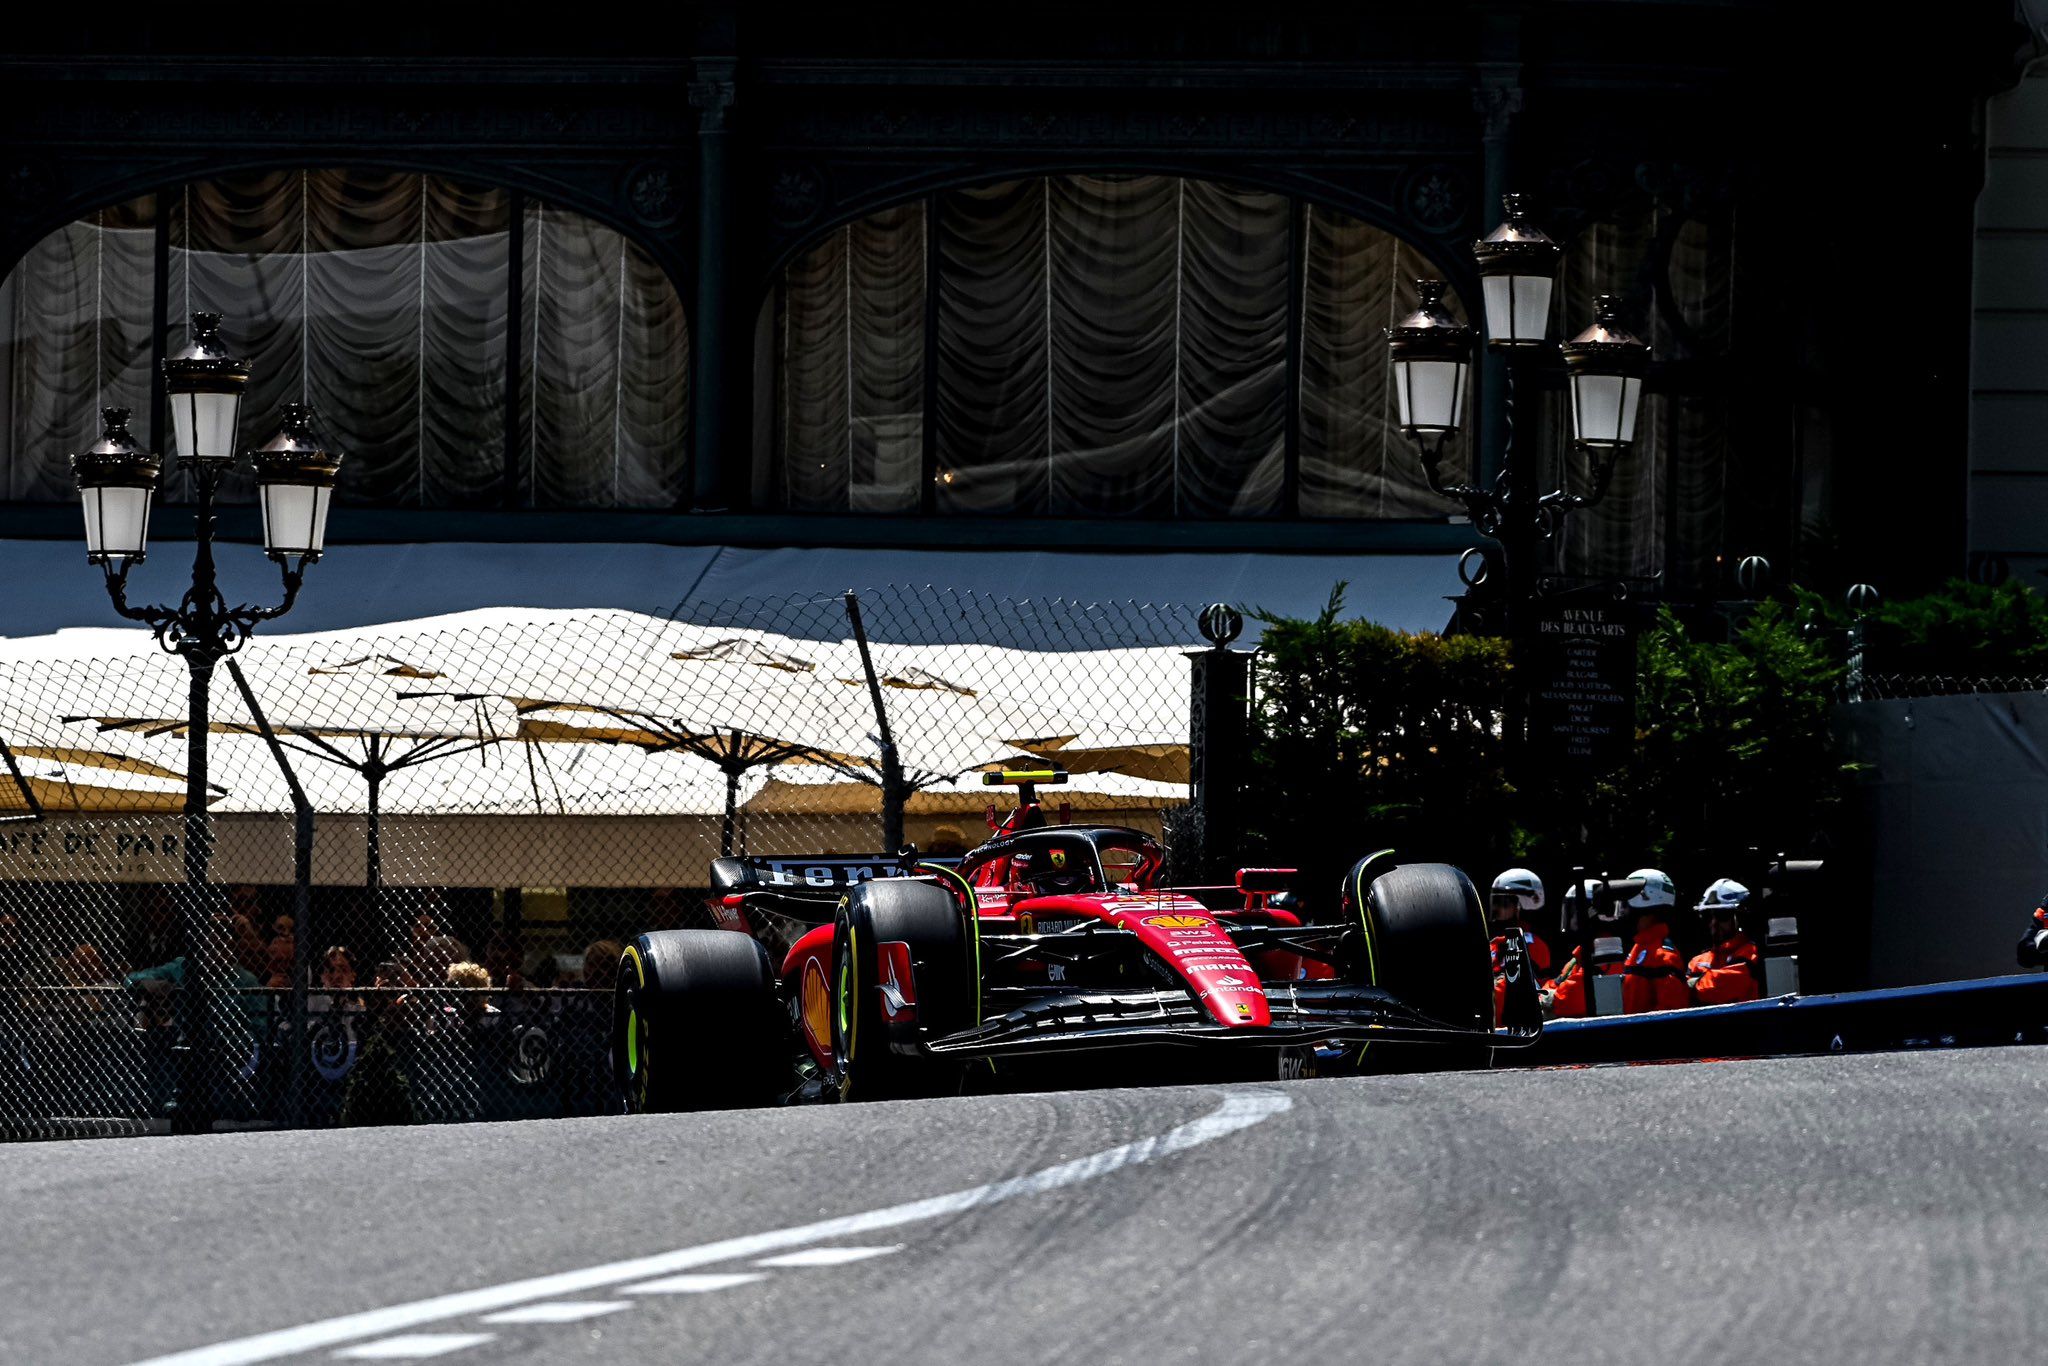 Monaco GP, F1